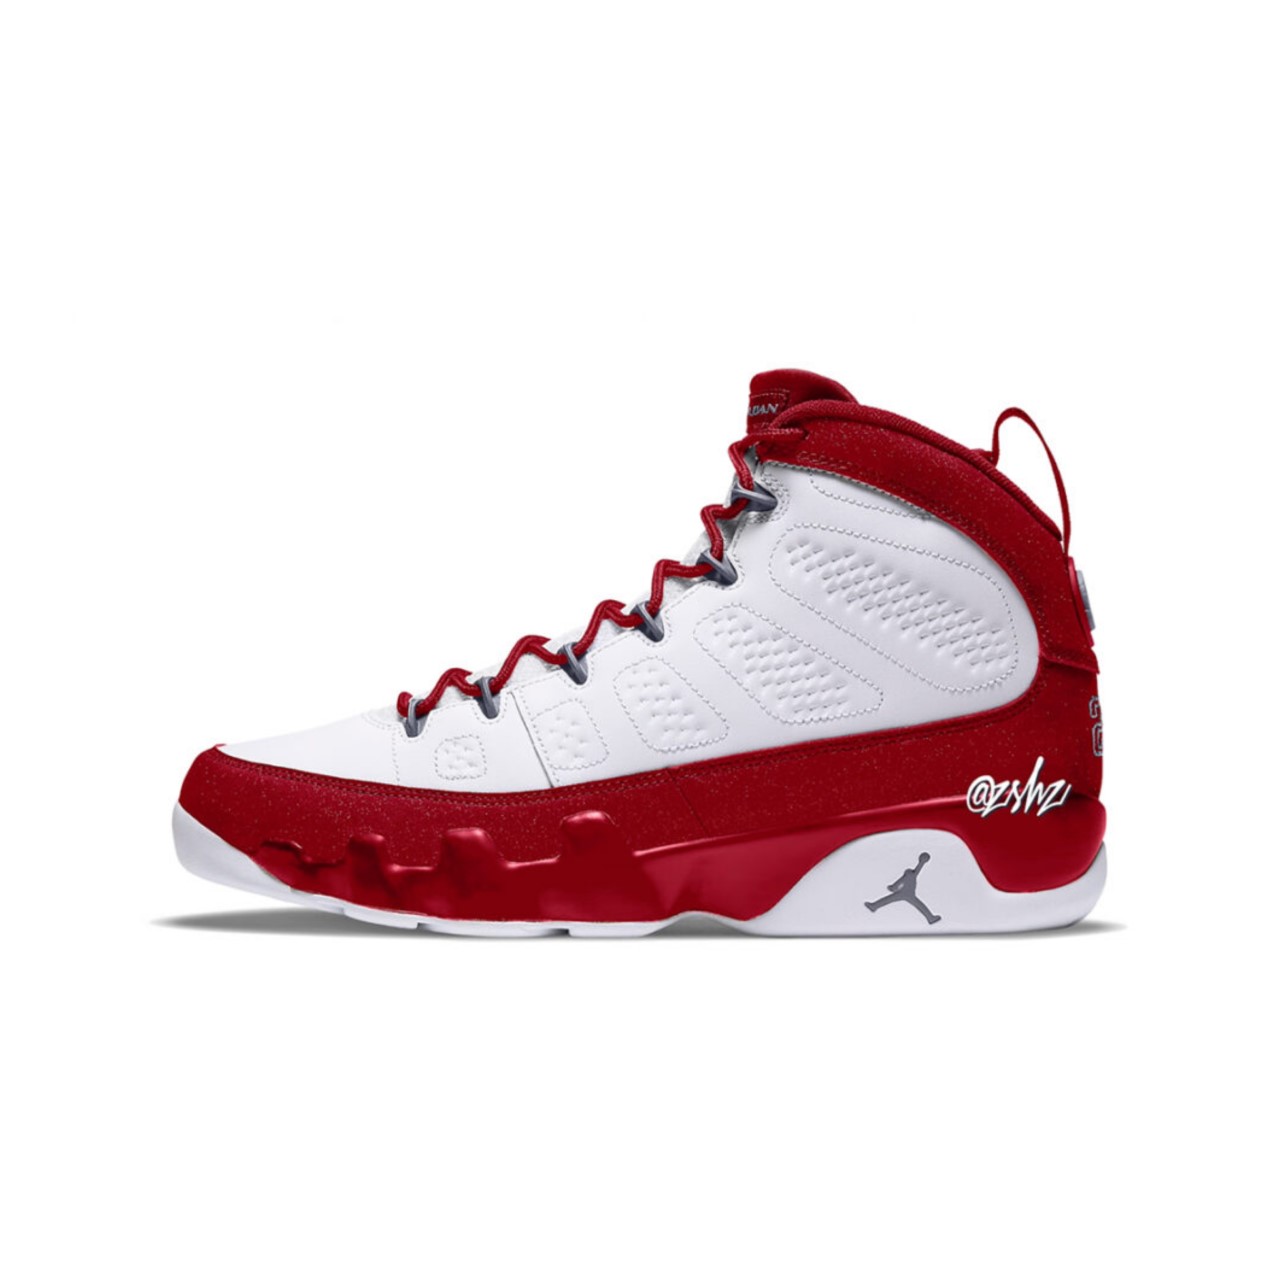 Air Jordan 9 Retro “Fire Red” Release Date